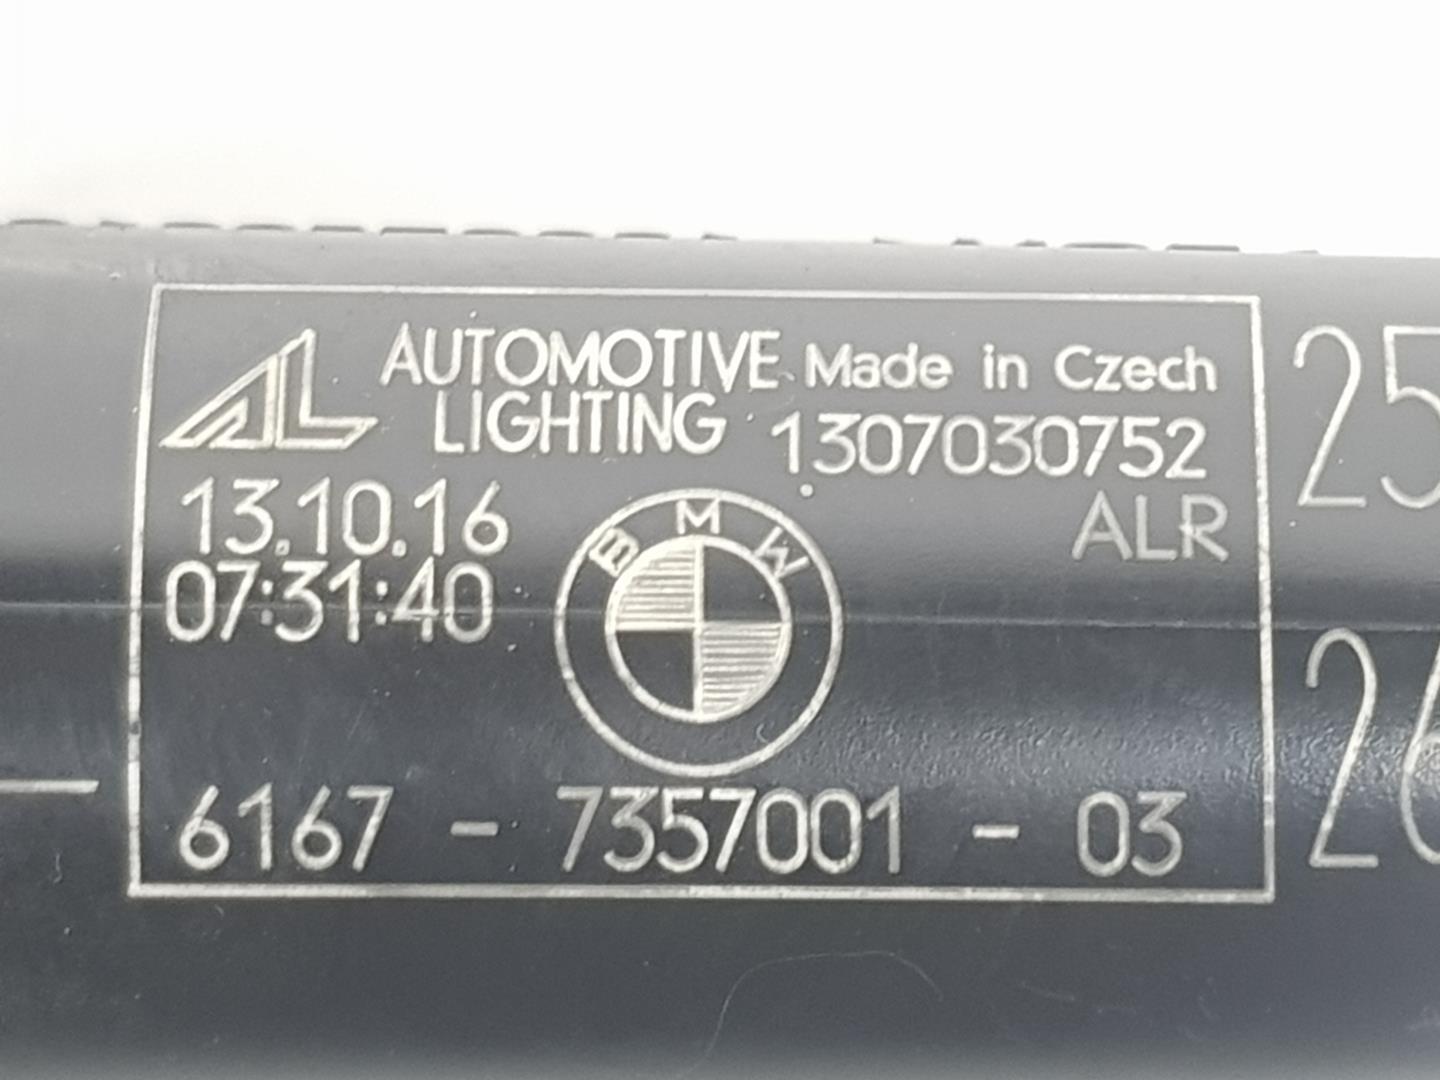 BMW X3 F25 (2010-2017) Kairys žibintų apiplovėjas (purkštukas) 61677357001, 7357001 23754842